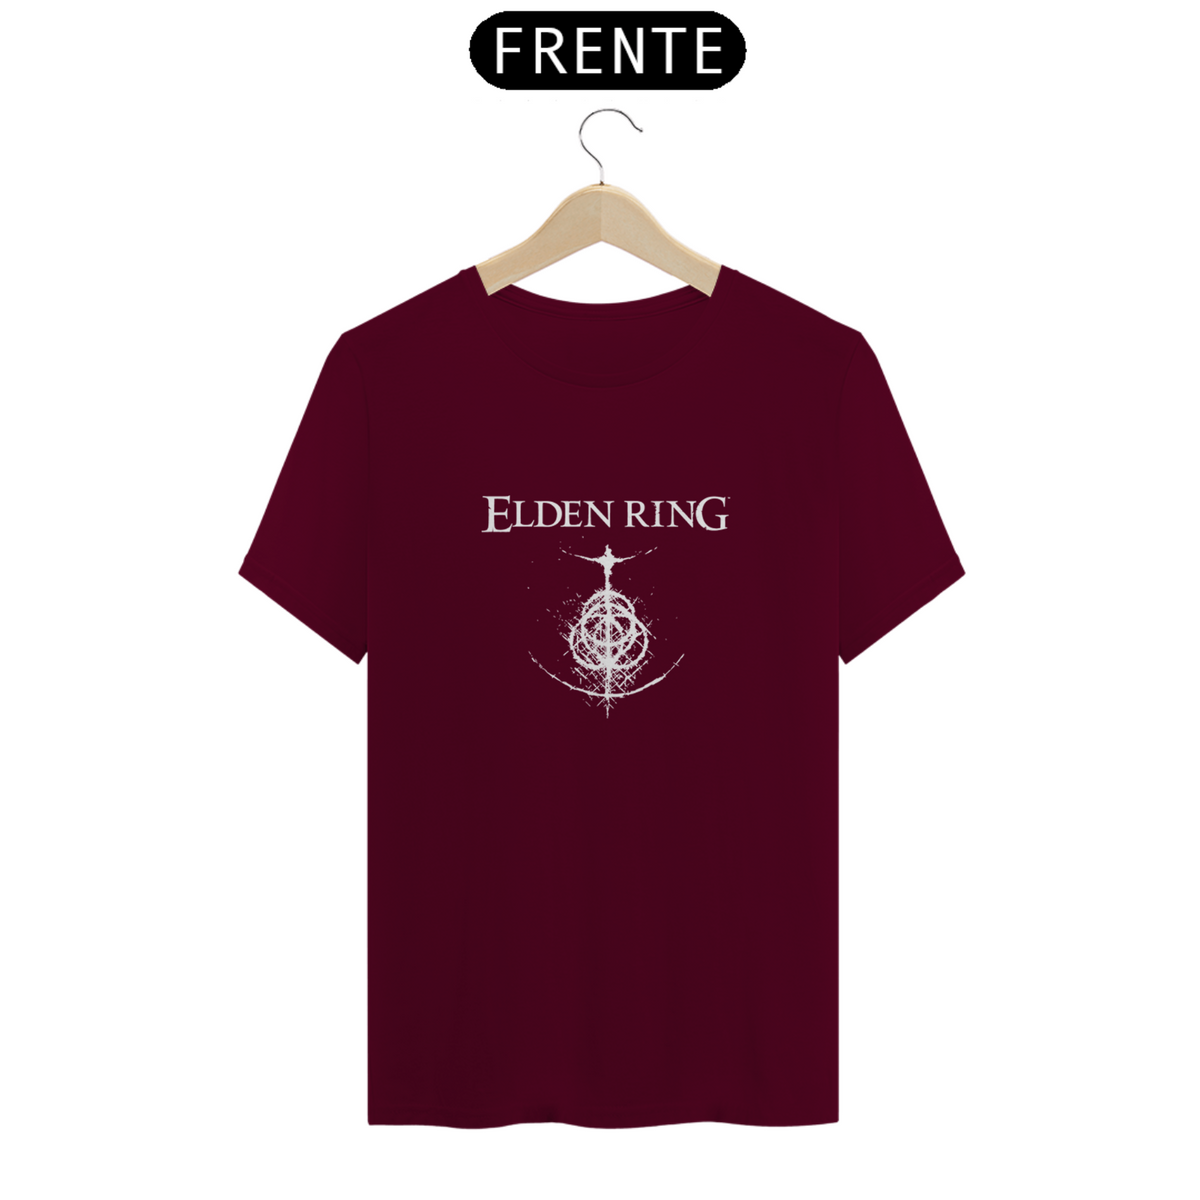 Nome do produto: Camiseta Unissex Elden Ring 5